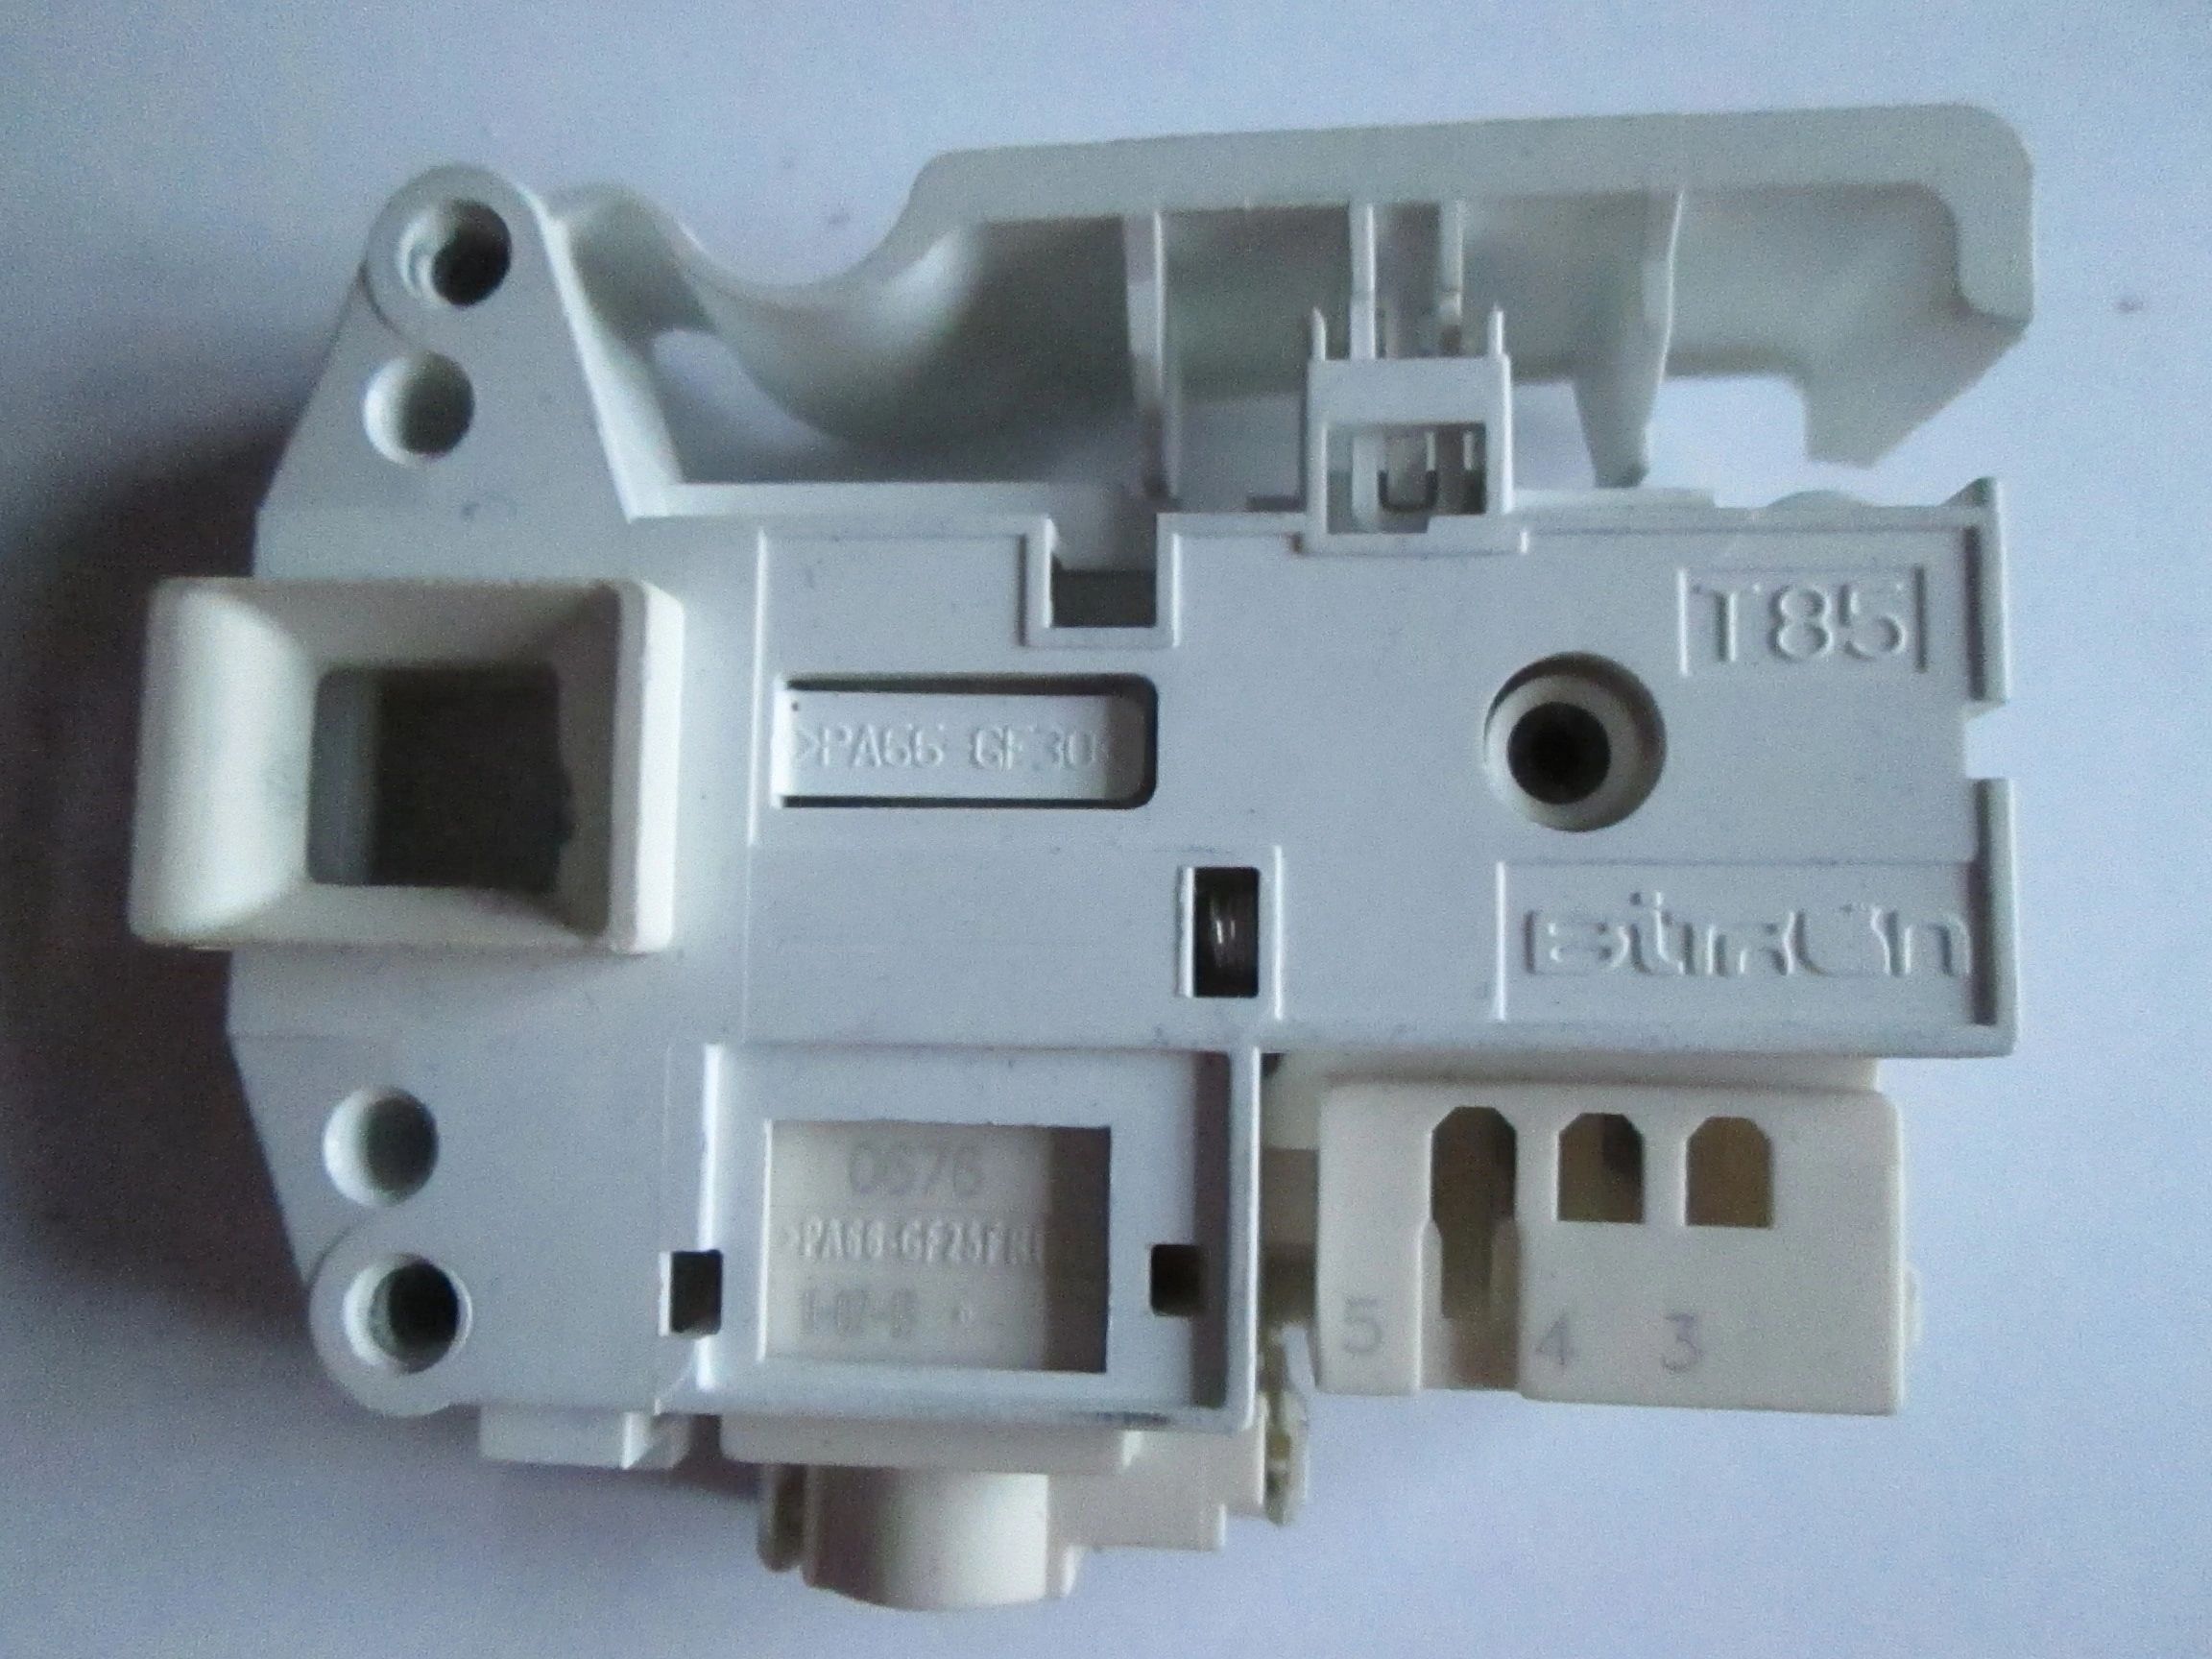 BUSH Genuine Washing Machine Door Lock Interlock Switch Spare Replacement Part 